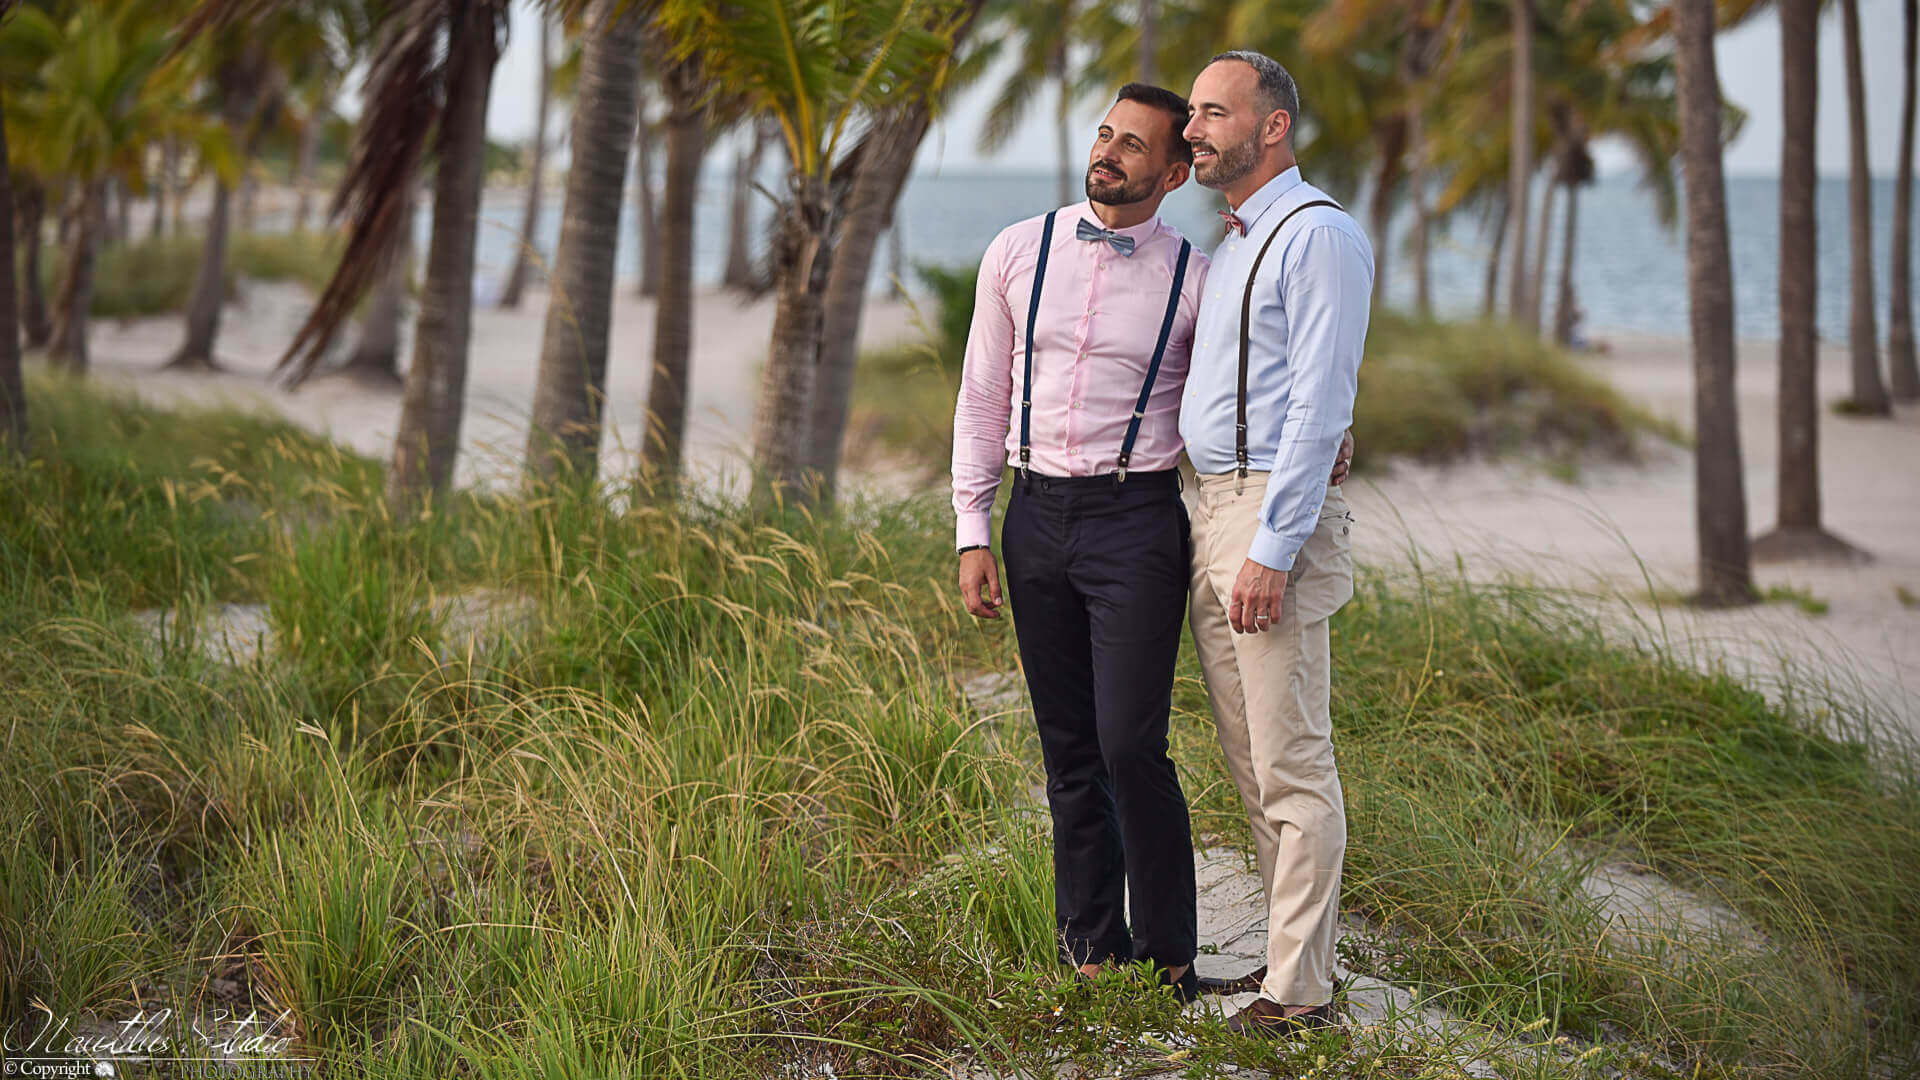 Boda del mismo sexo en Key Biscayne Florida, foto de boda gay